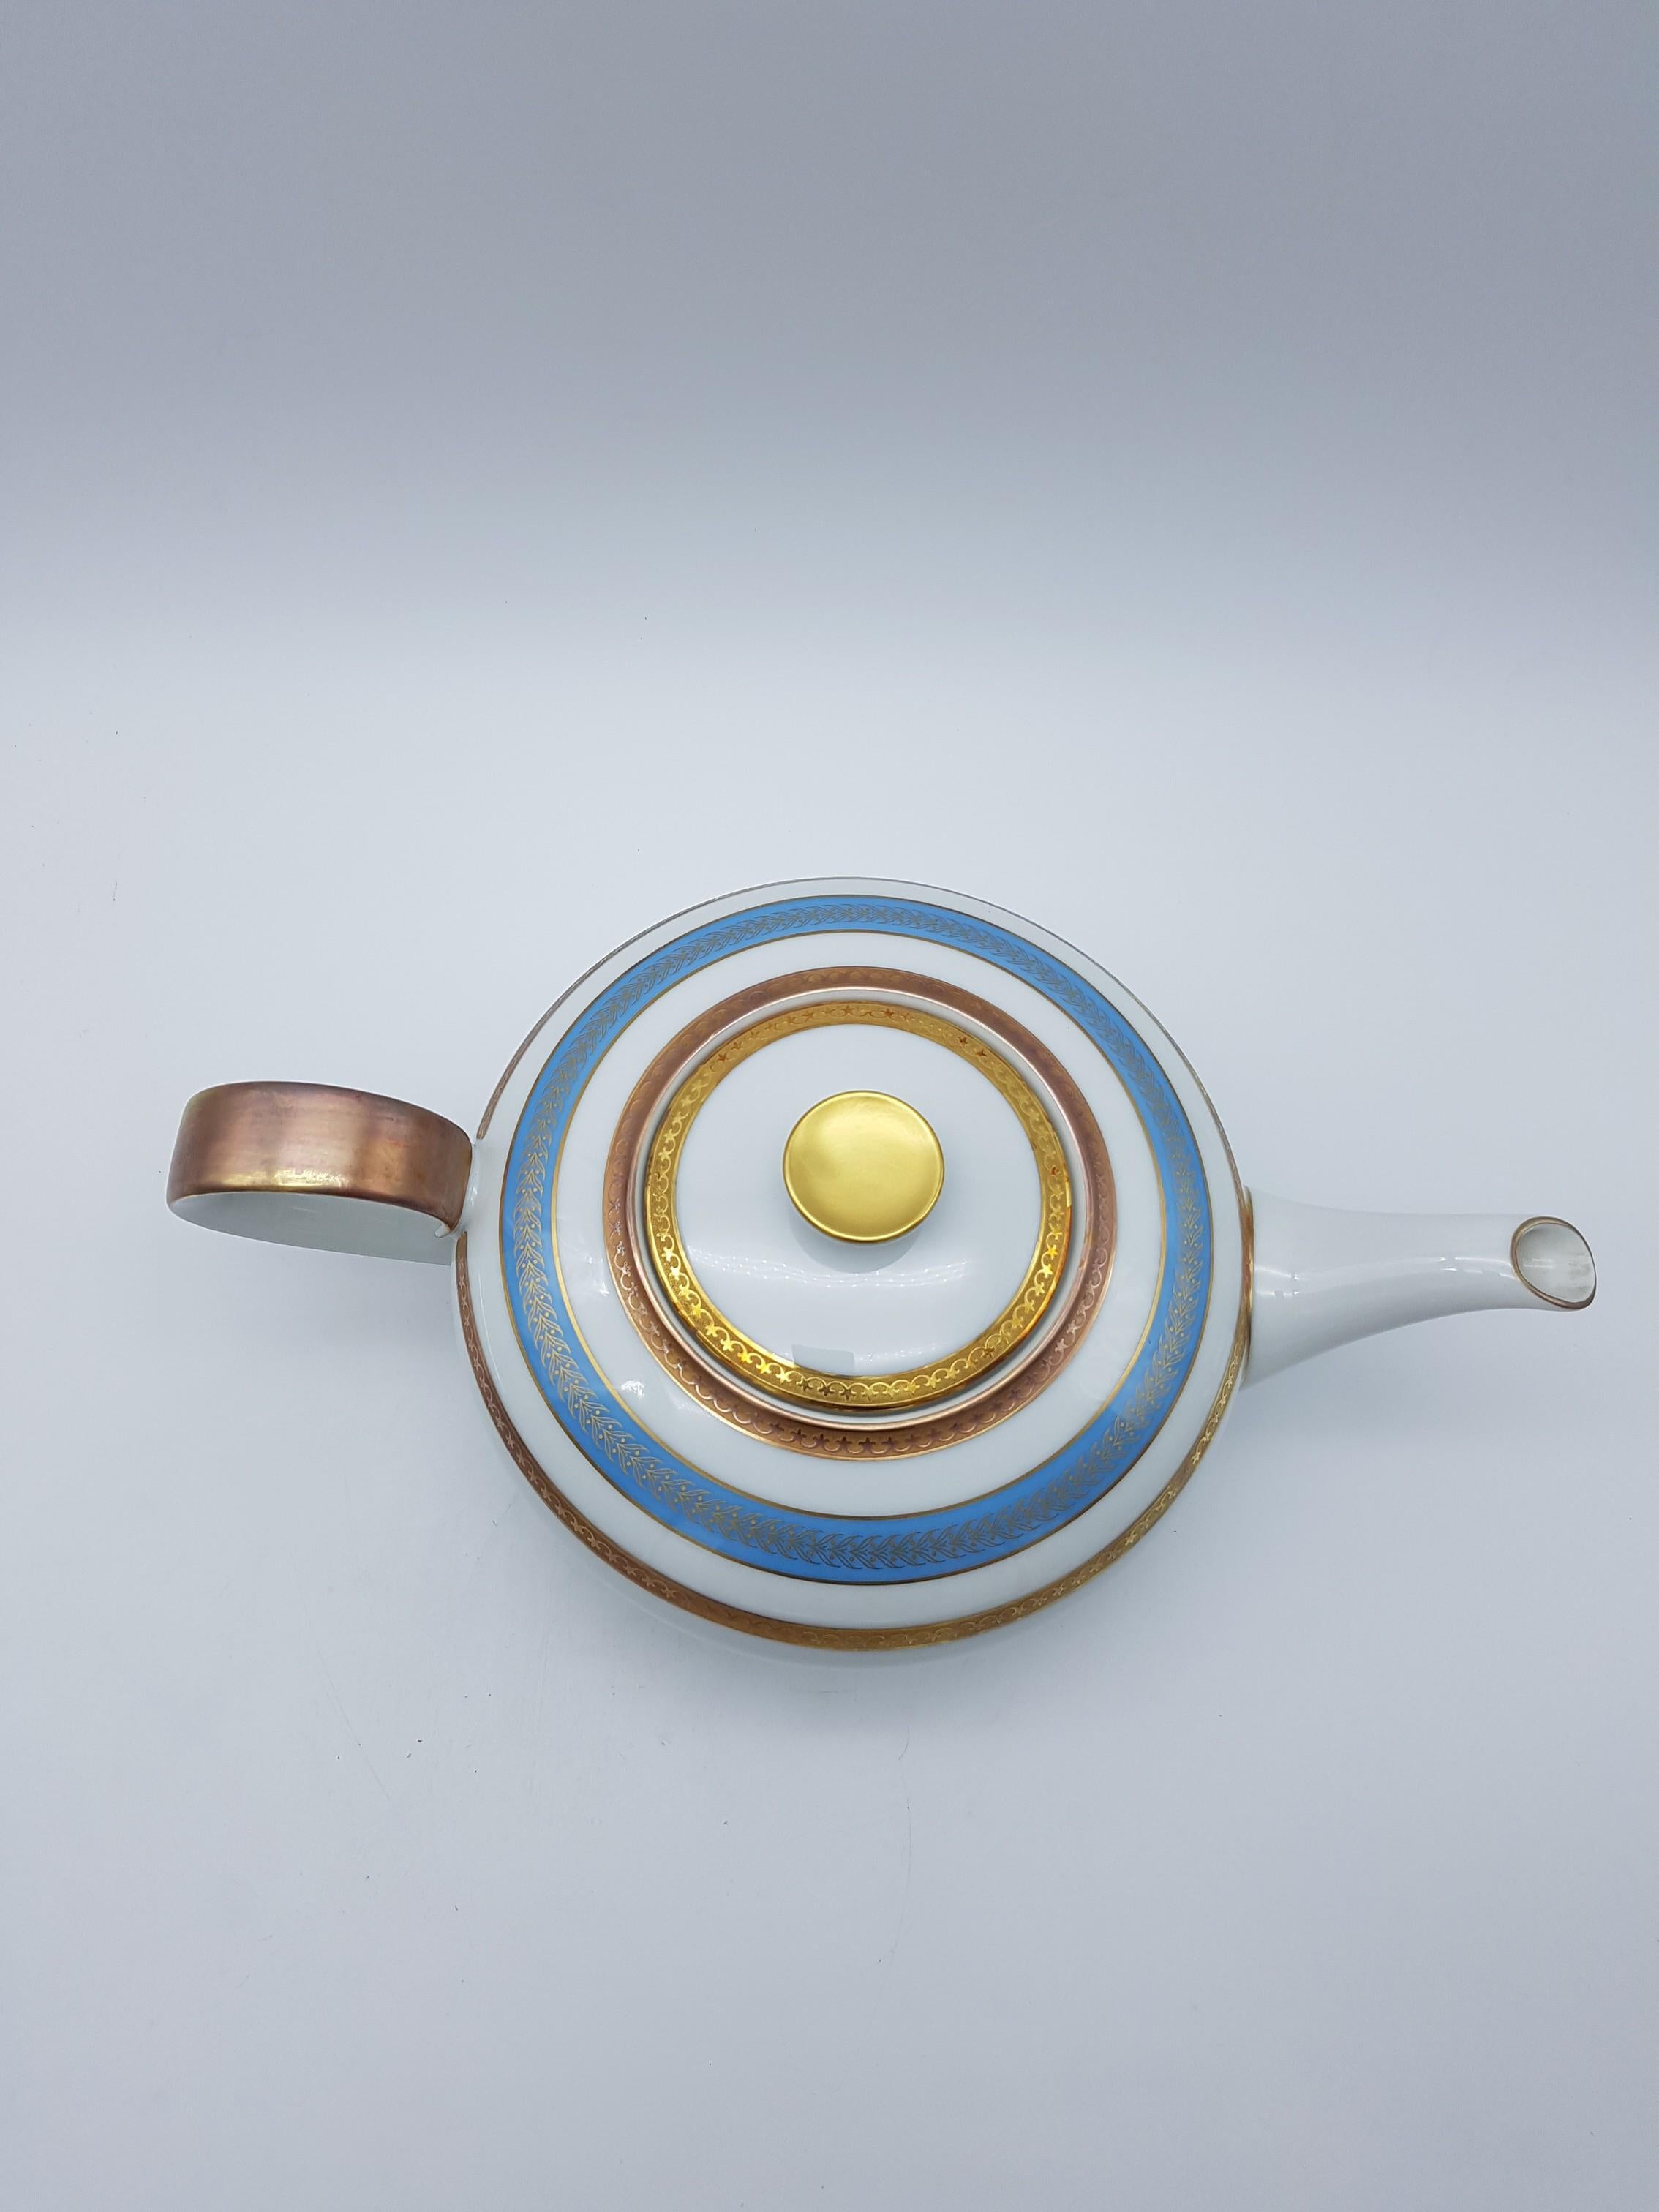 Heinrich Bavaria Porcelain Tea-Set, 14-Piece Gold Rimmed Bone China Set For Sale 2